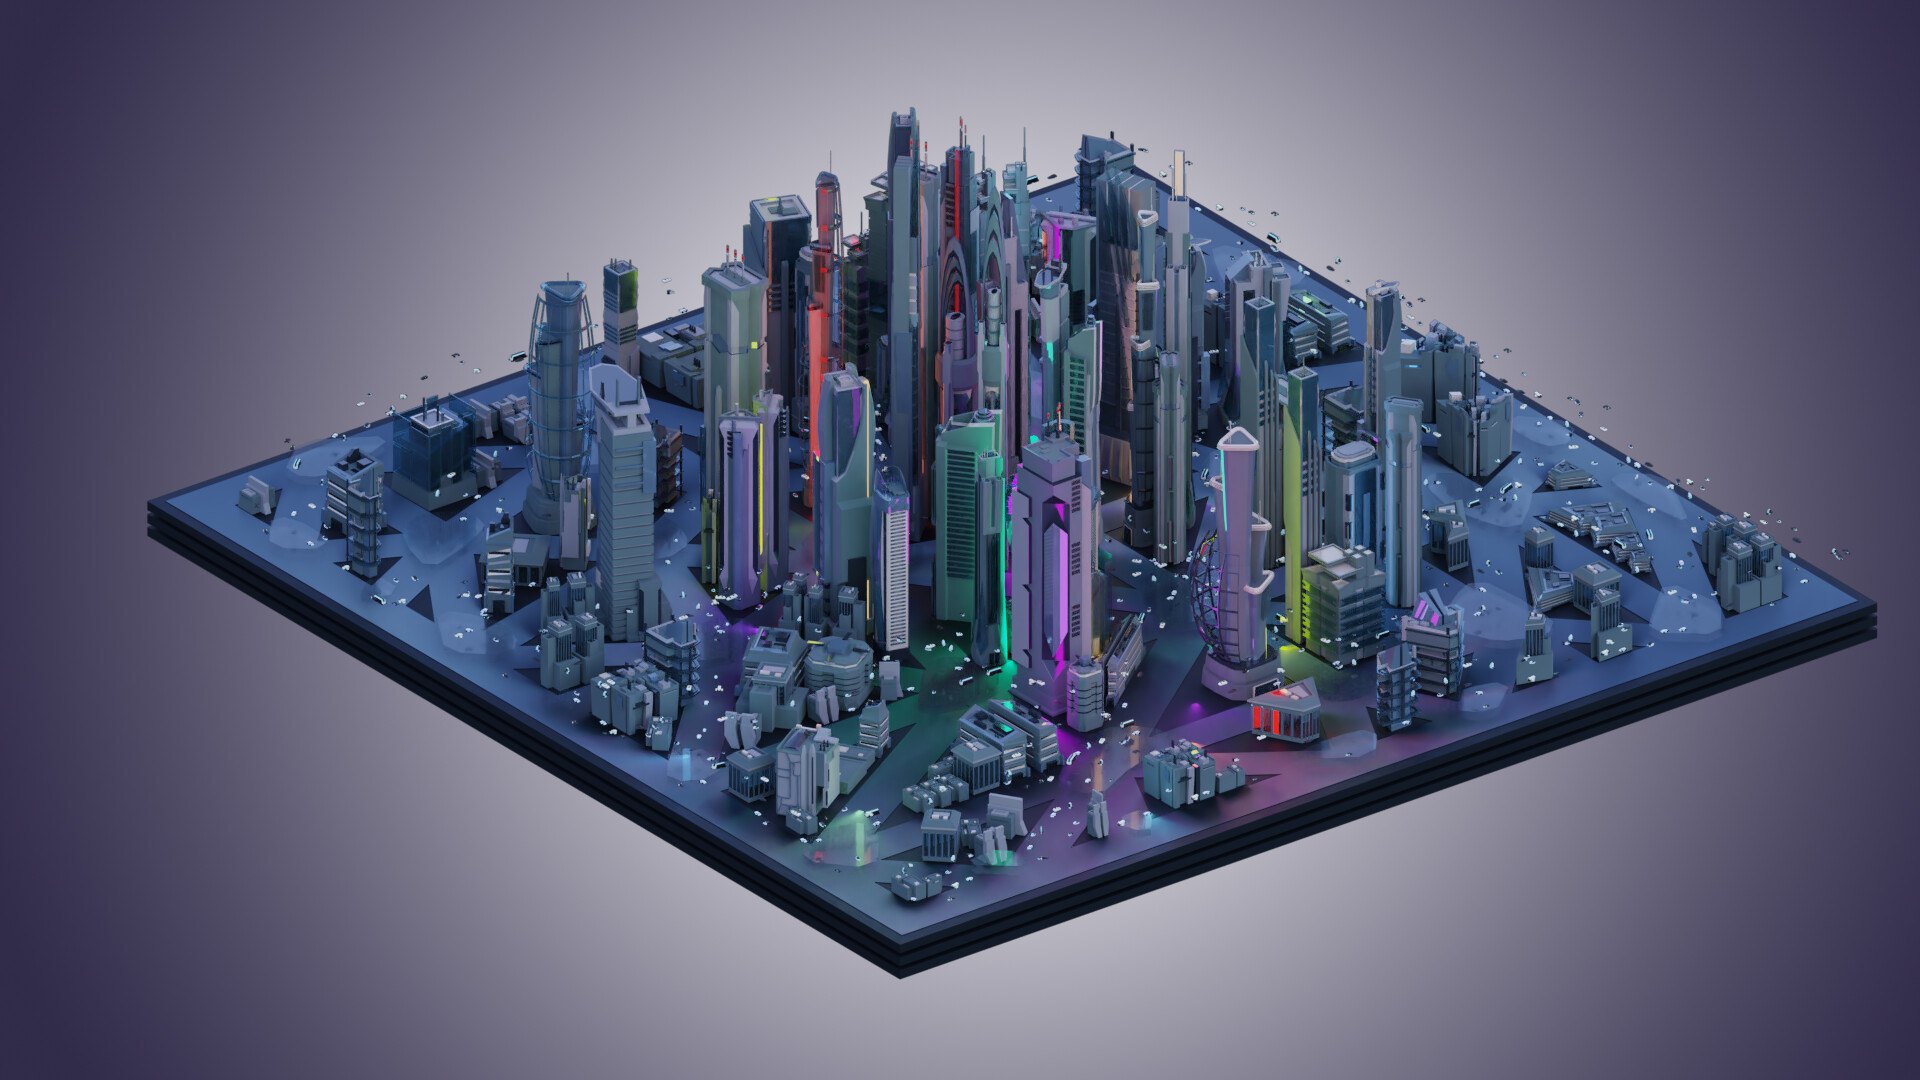 Разработанная модель 3. Scifi City архитектура 3d model лазер. 3д моделирование. Модель города будущего. Трехмерное моделирование.